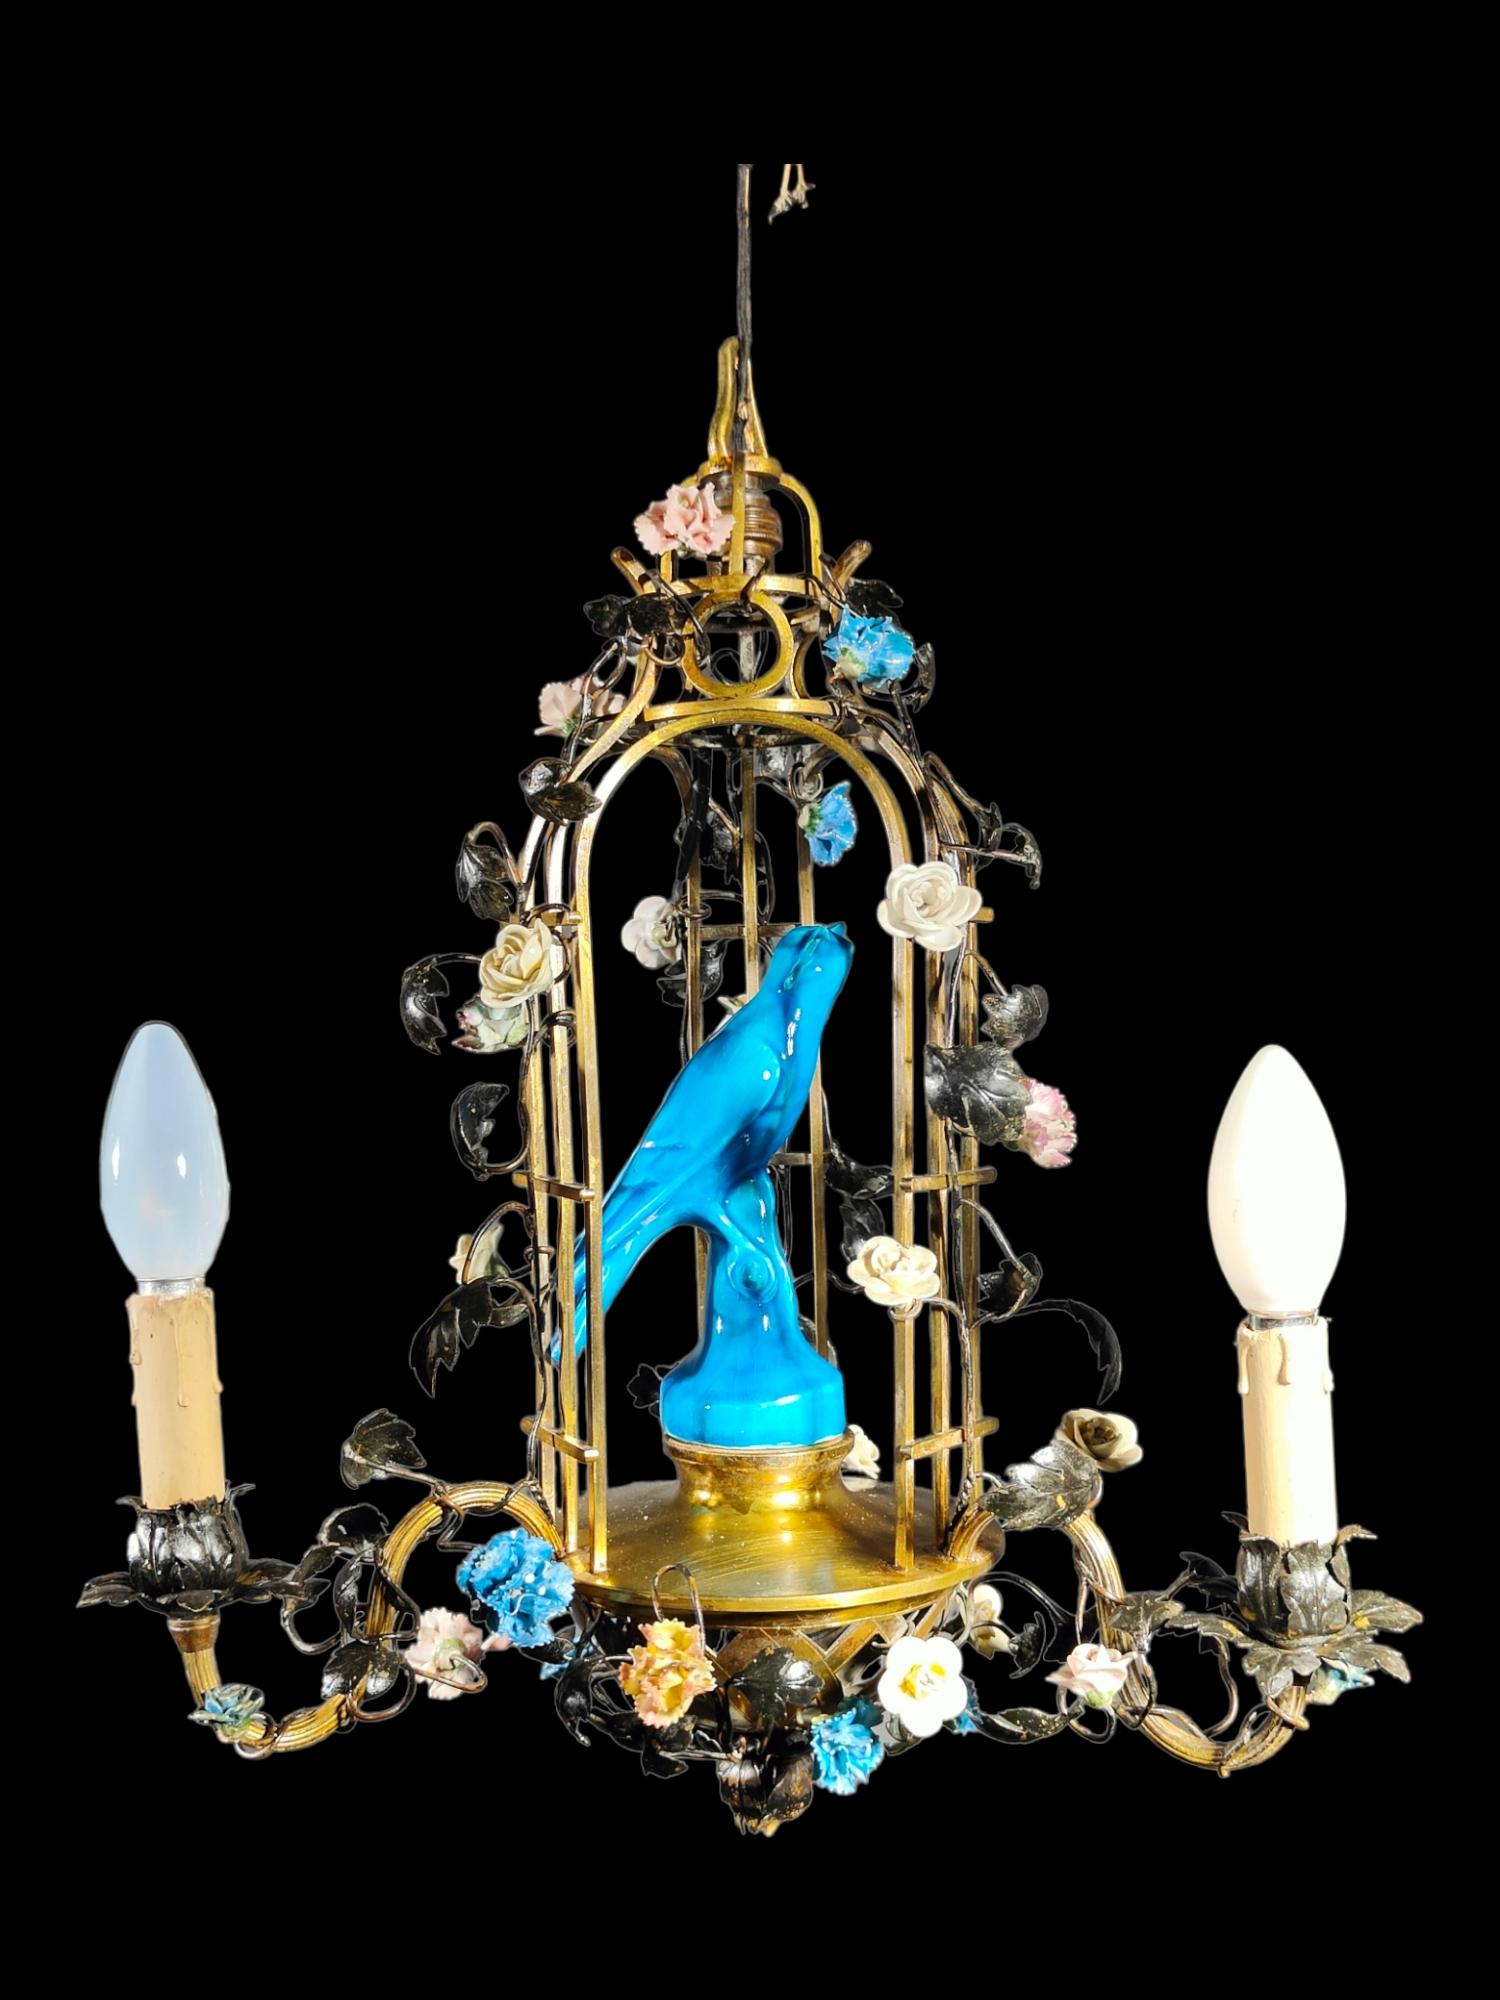 Lampe du XIXème siècle en forme de cage.
Elegante lampe du 19e siècle en forme de cage décorée de fleurs en porcelaine et d'un oiseau exotique. Très décoratif. Dimensions : 55 cm de hauteur et 40 cm de diamètre : 55 cm de hauteur et 40 cm de